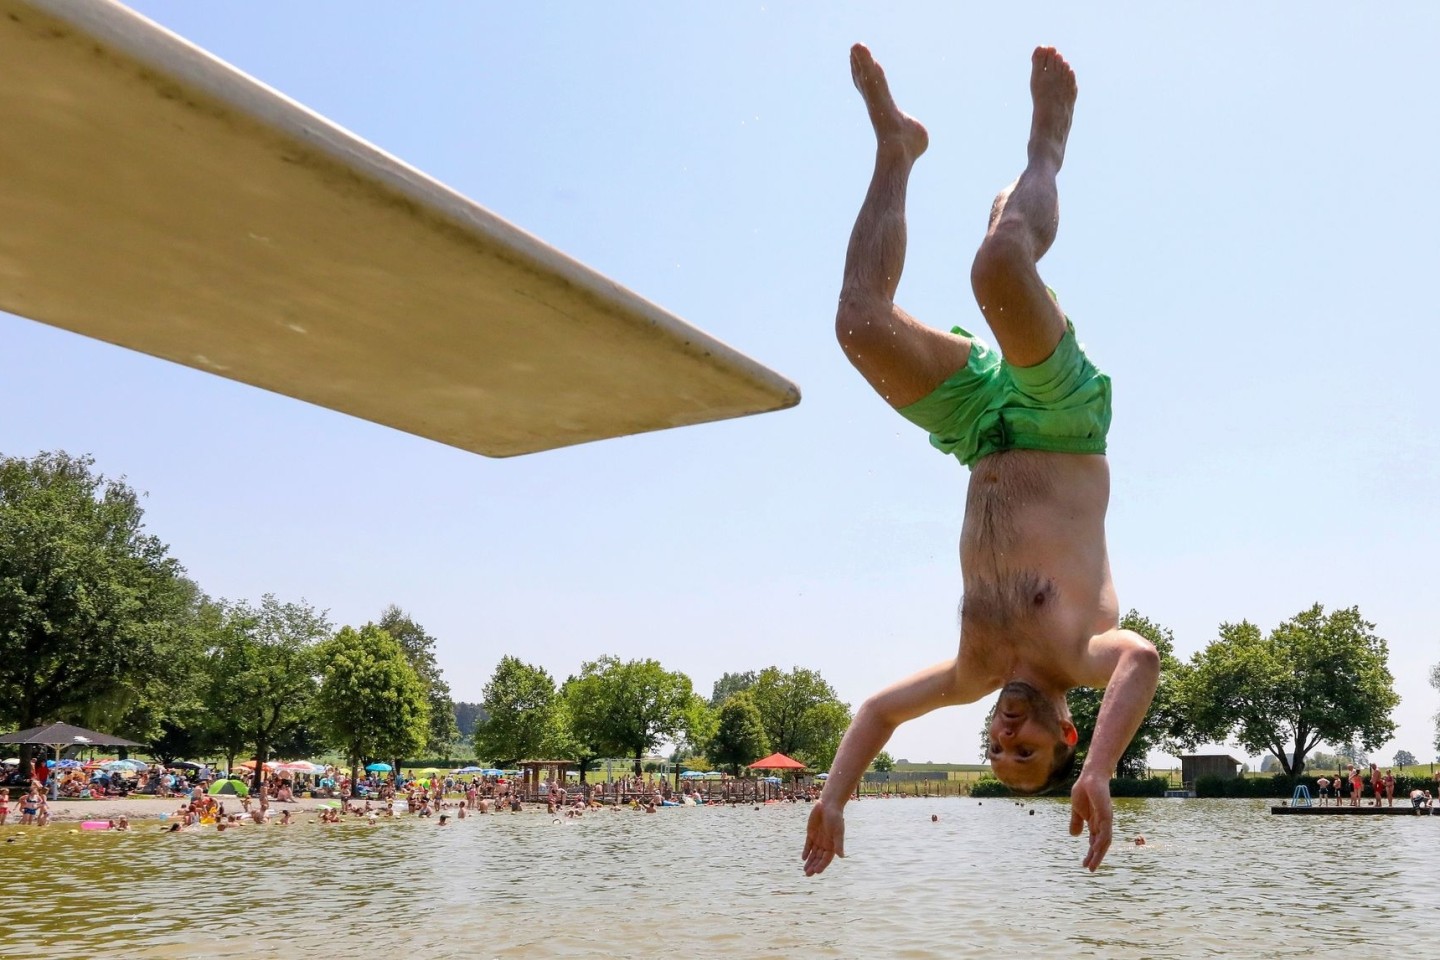 Hitze auch am Sonntag: Ein Mann springt kopfüber von einem Sprungbrett in das Wasser.